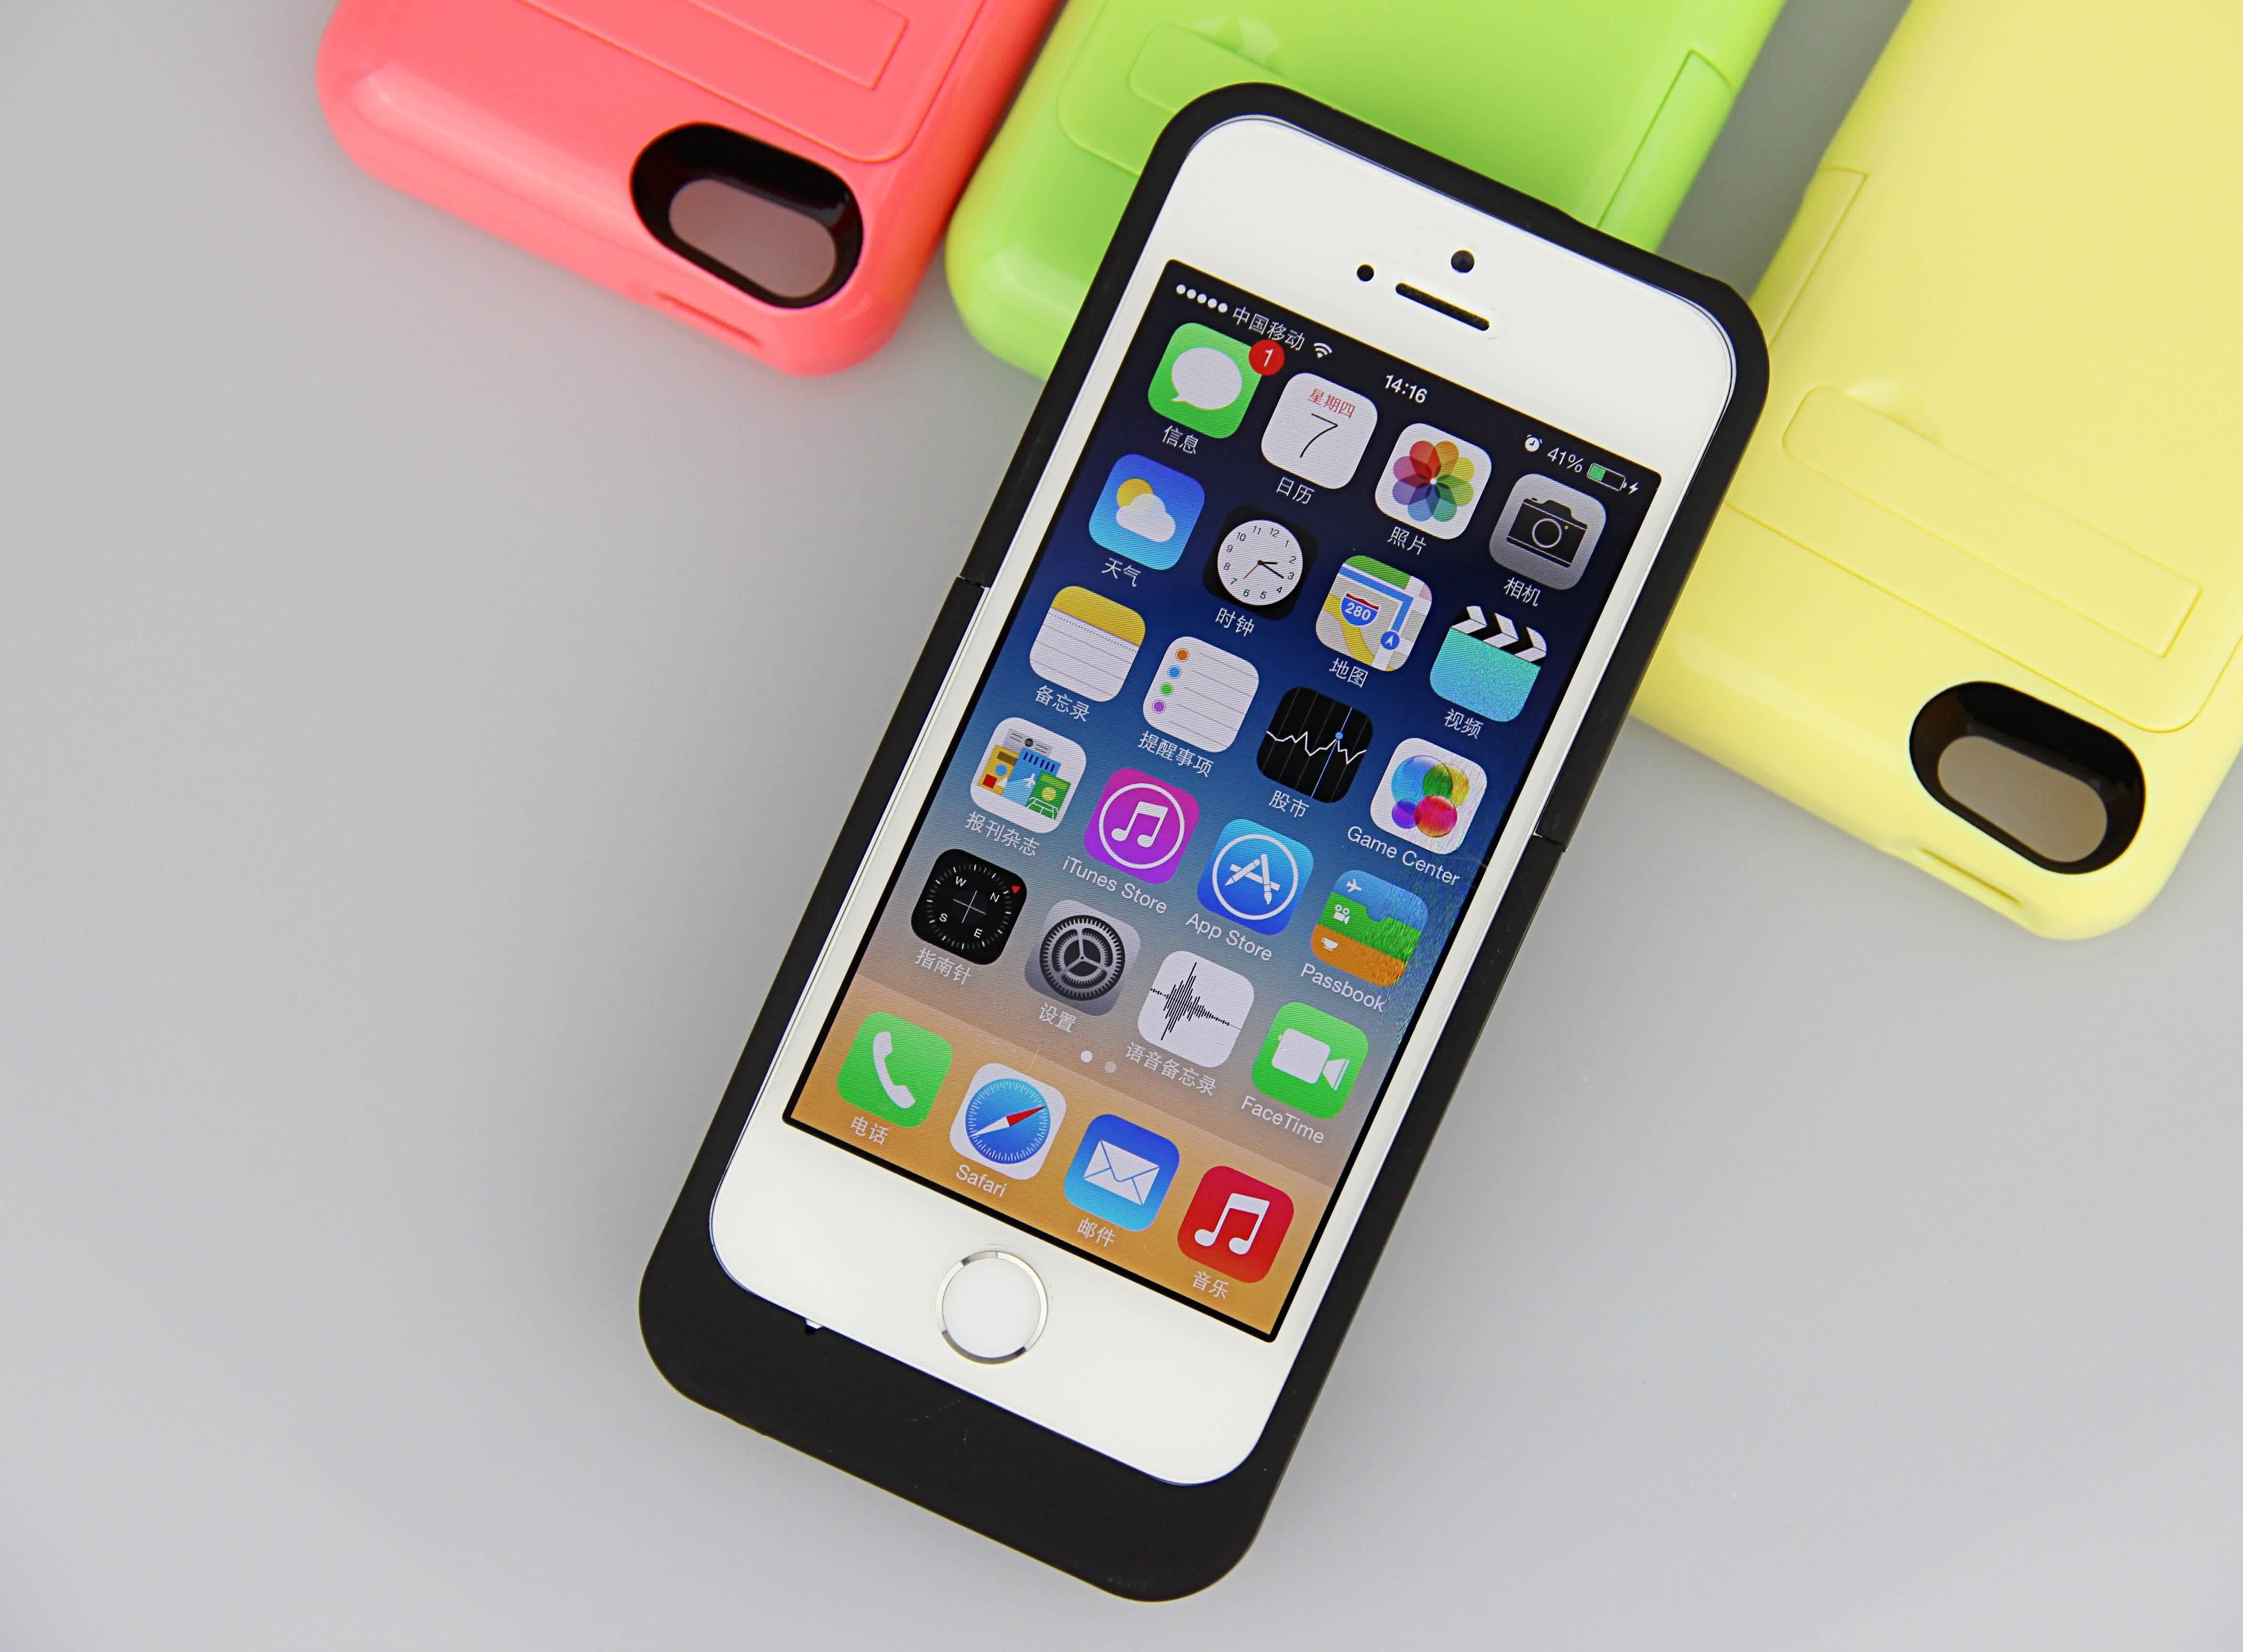 หลายสีบาง iPhone ในกรณีที่แบตเตอรี่ 2200mAh แบตเตอรี่สำรองสำหรับ iPhone 5